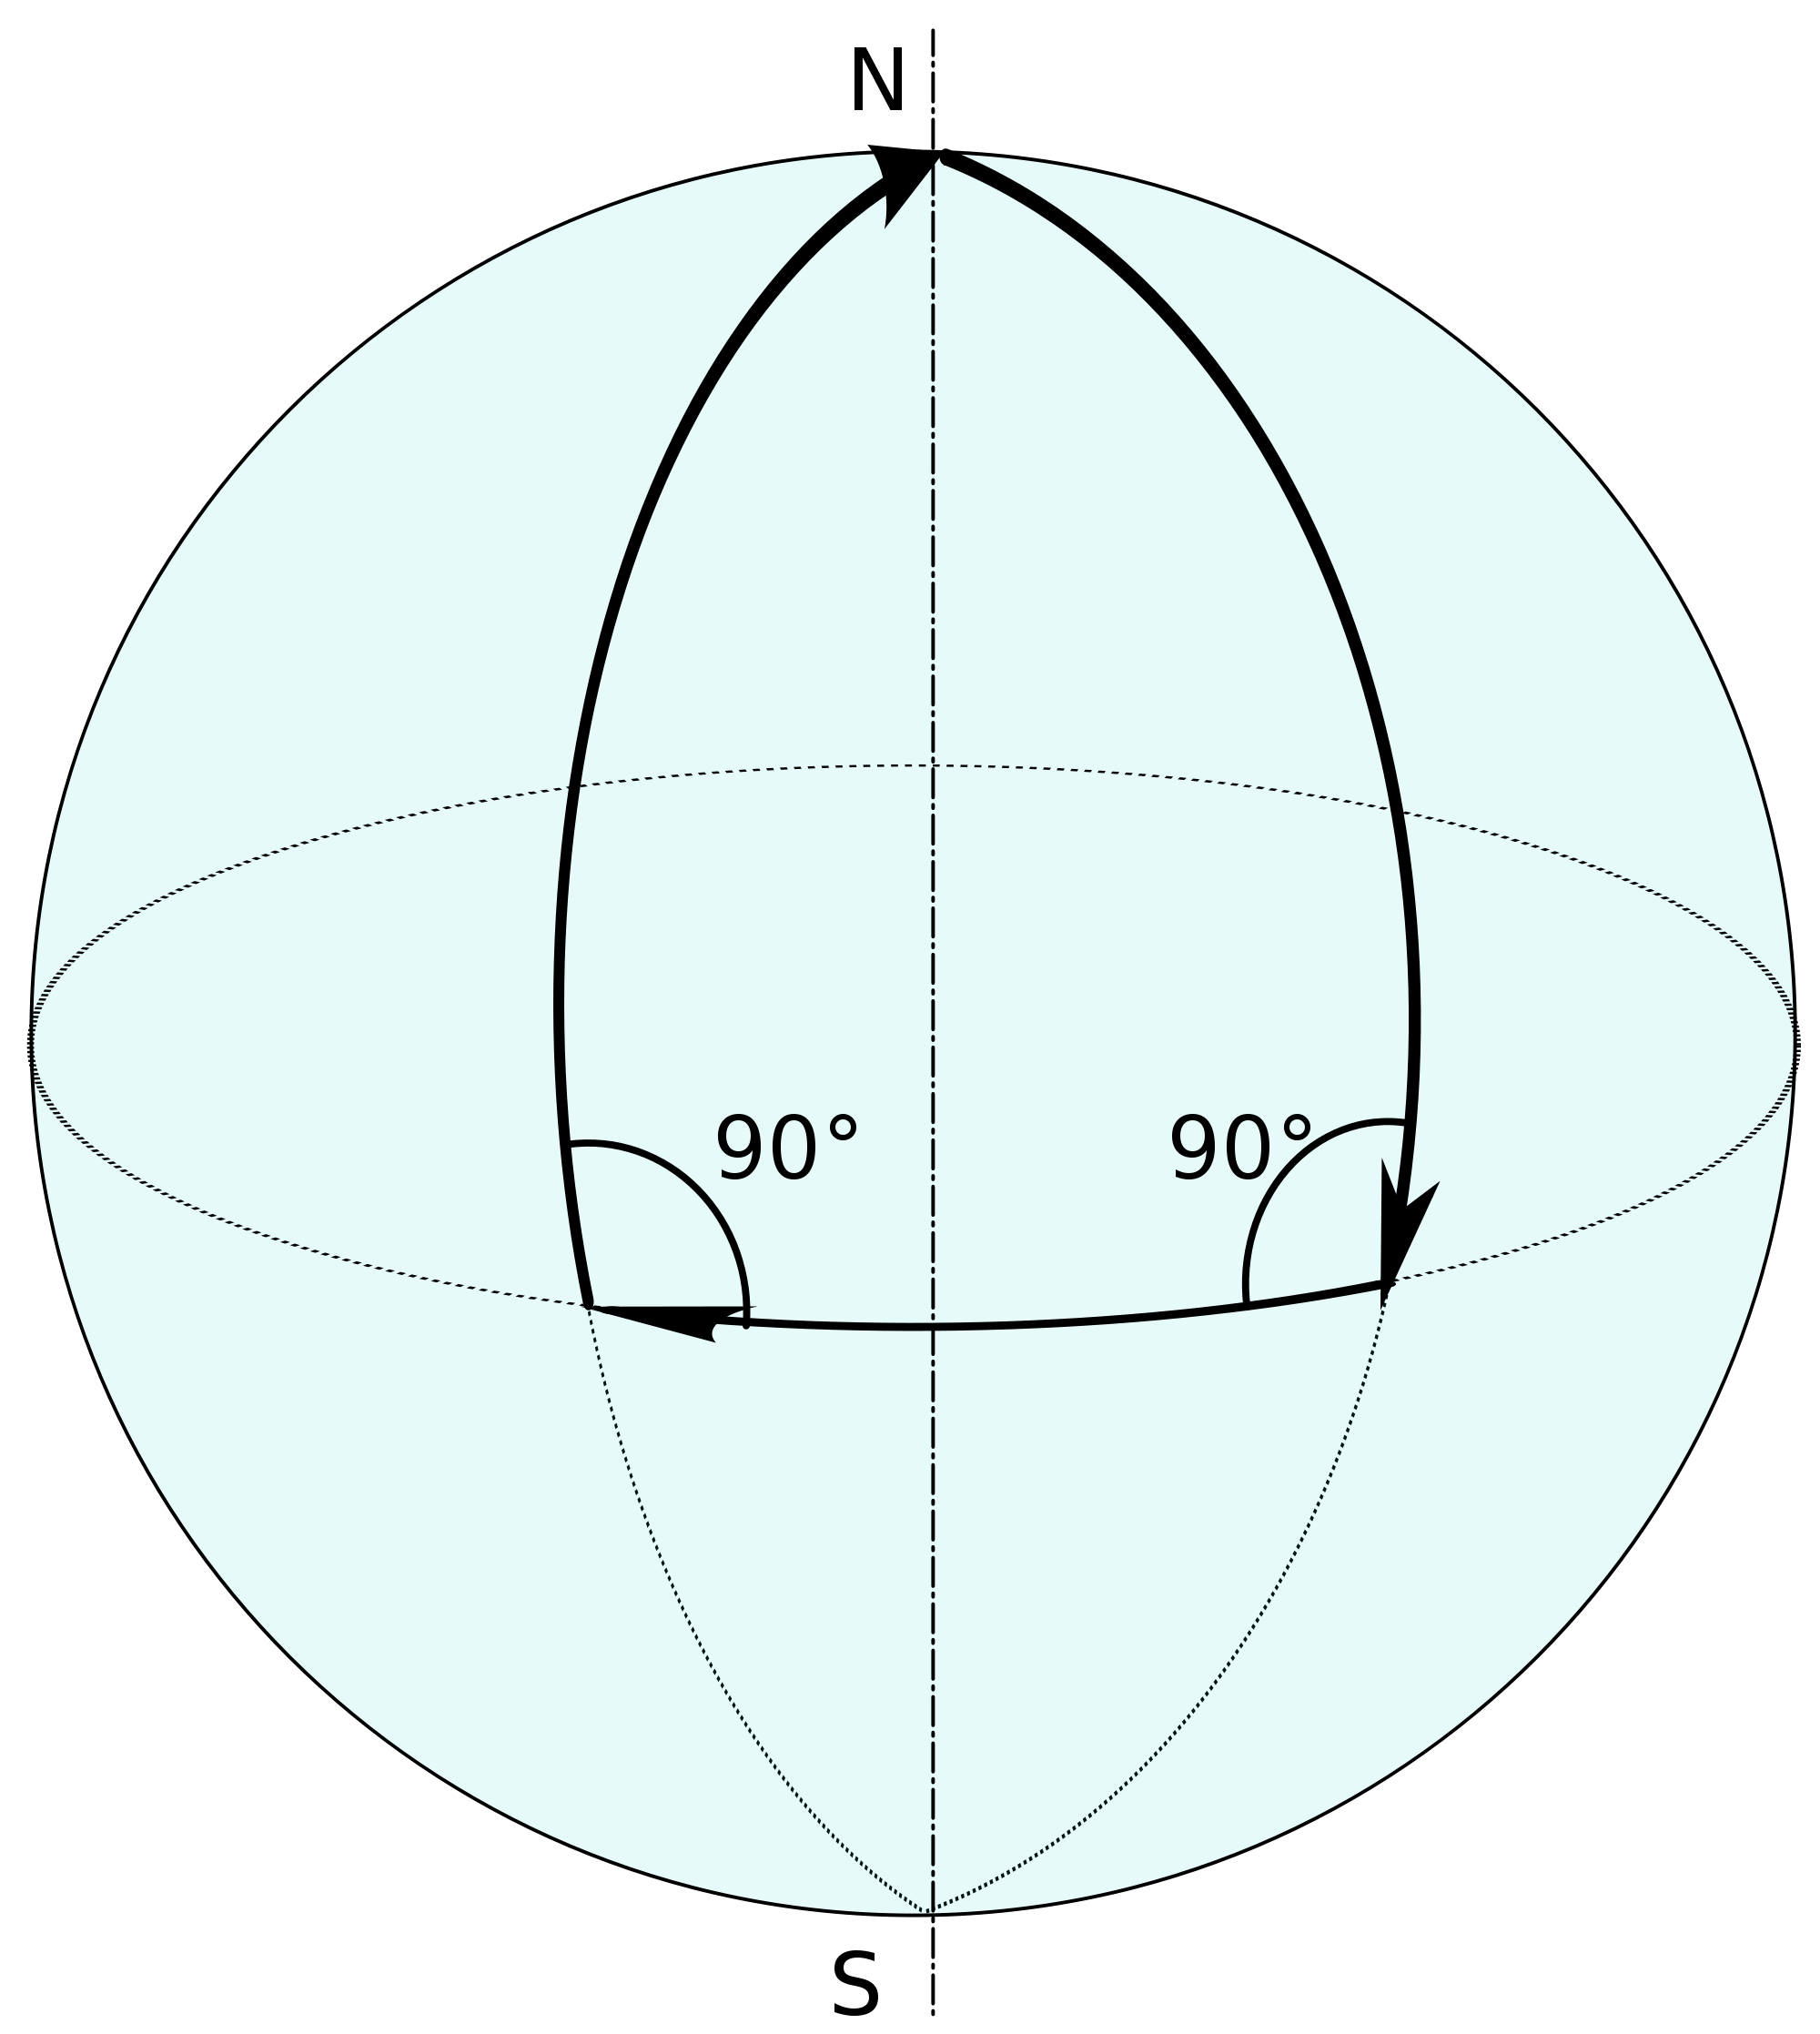 Шарики прямые линии. Эллиптическая геометрия Римана. Сфера Римана. Сферические фигуры. Сферическая геометрия.